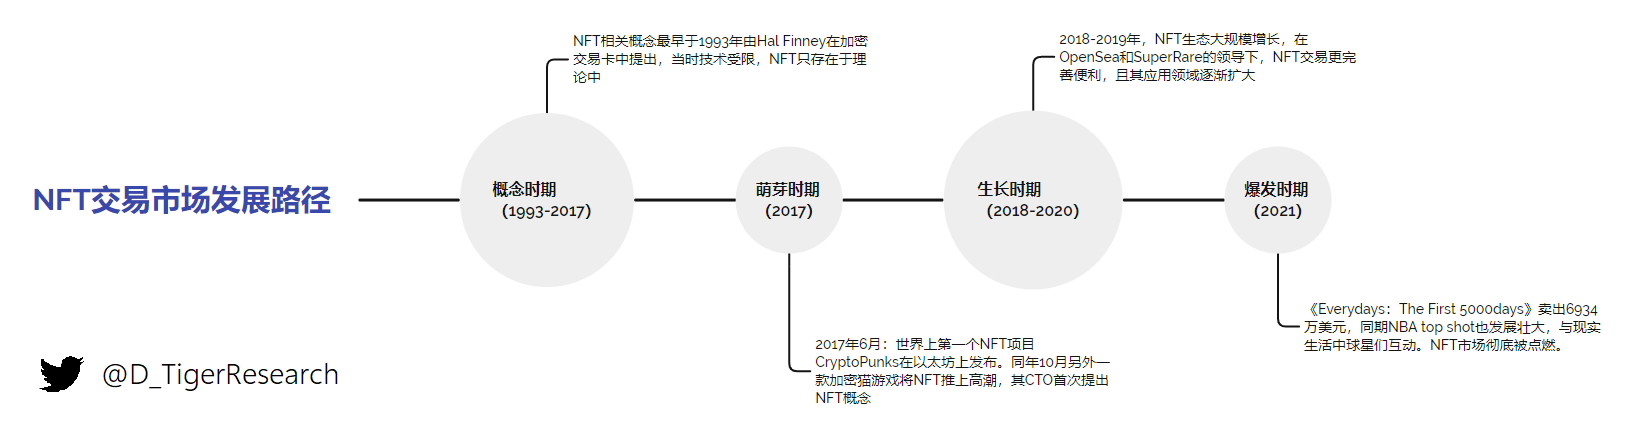 图 0-1 NFT 交易市场发展路径图